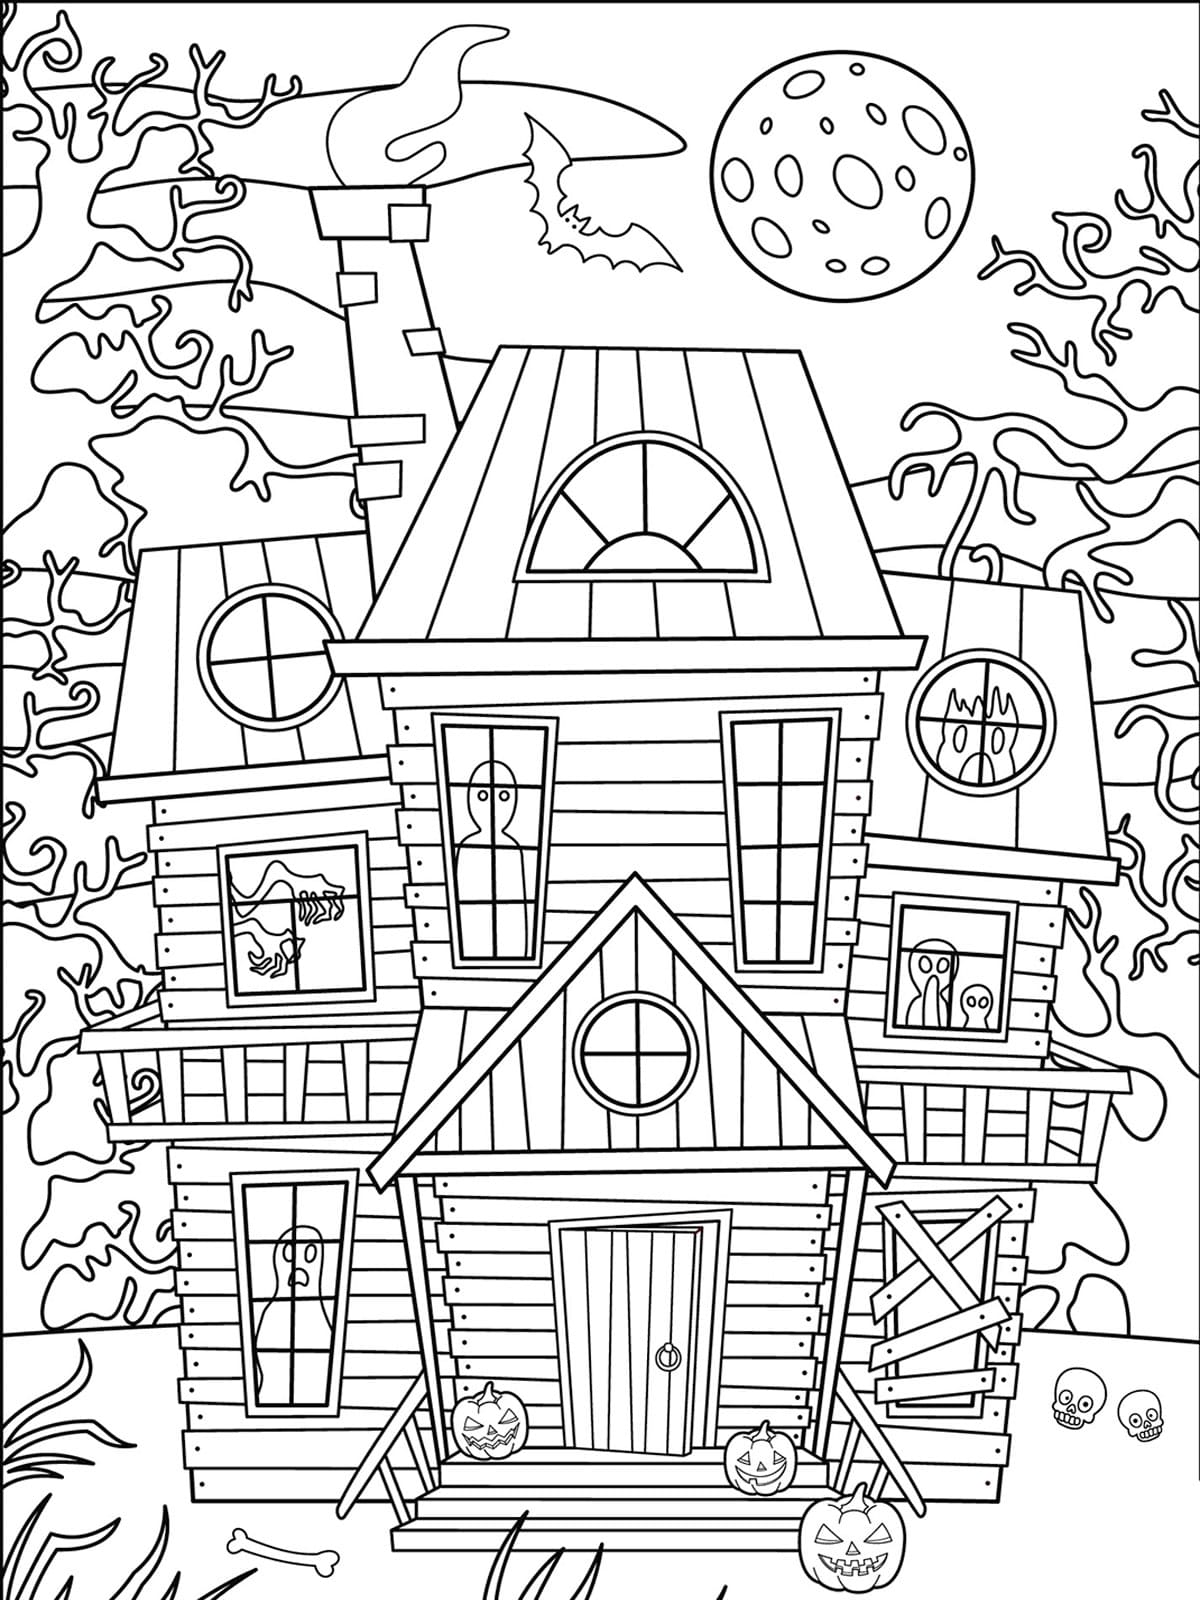 La Maison Hantée d’Halloween coloring page